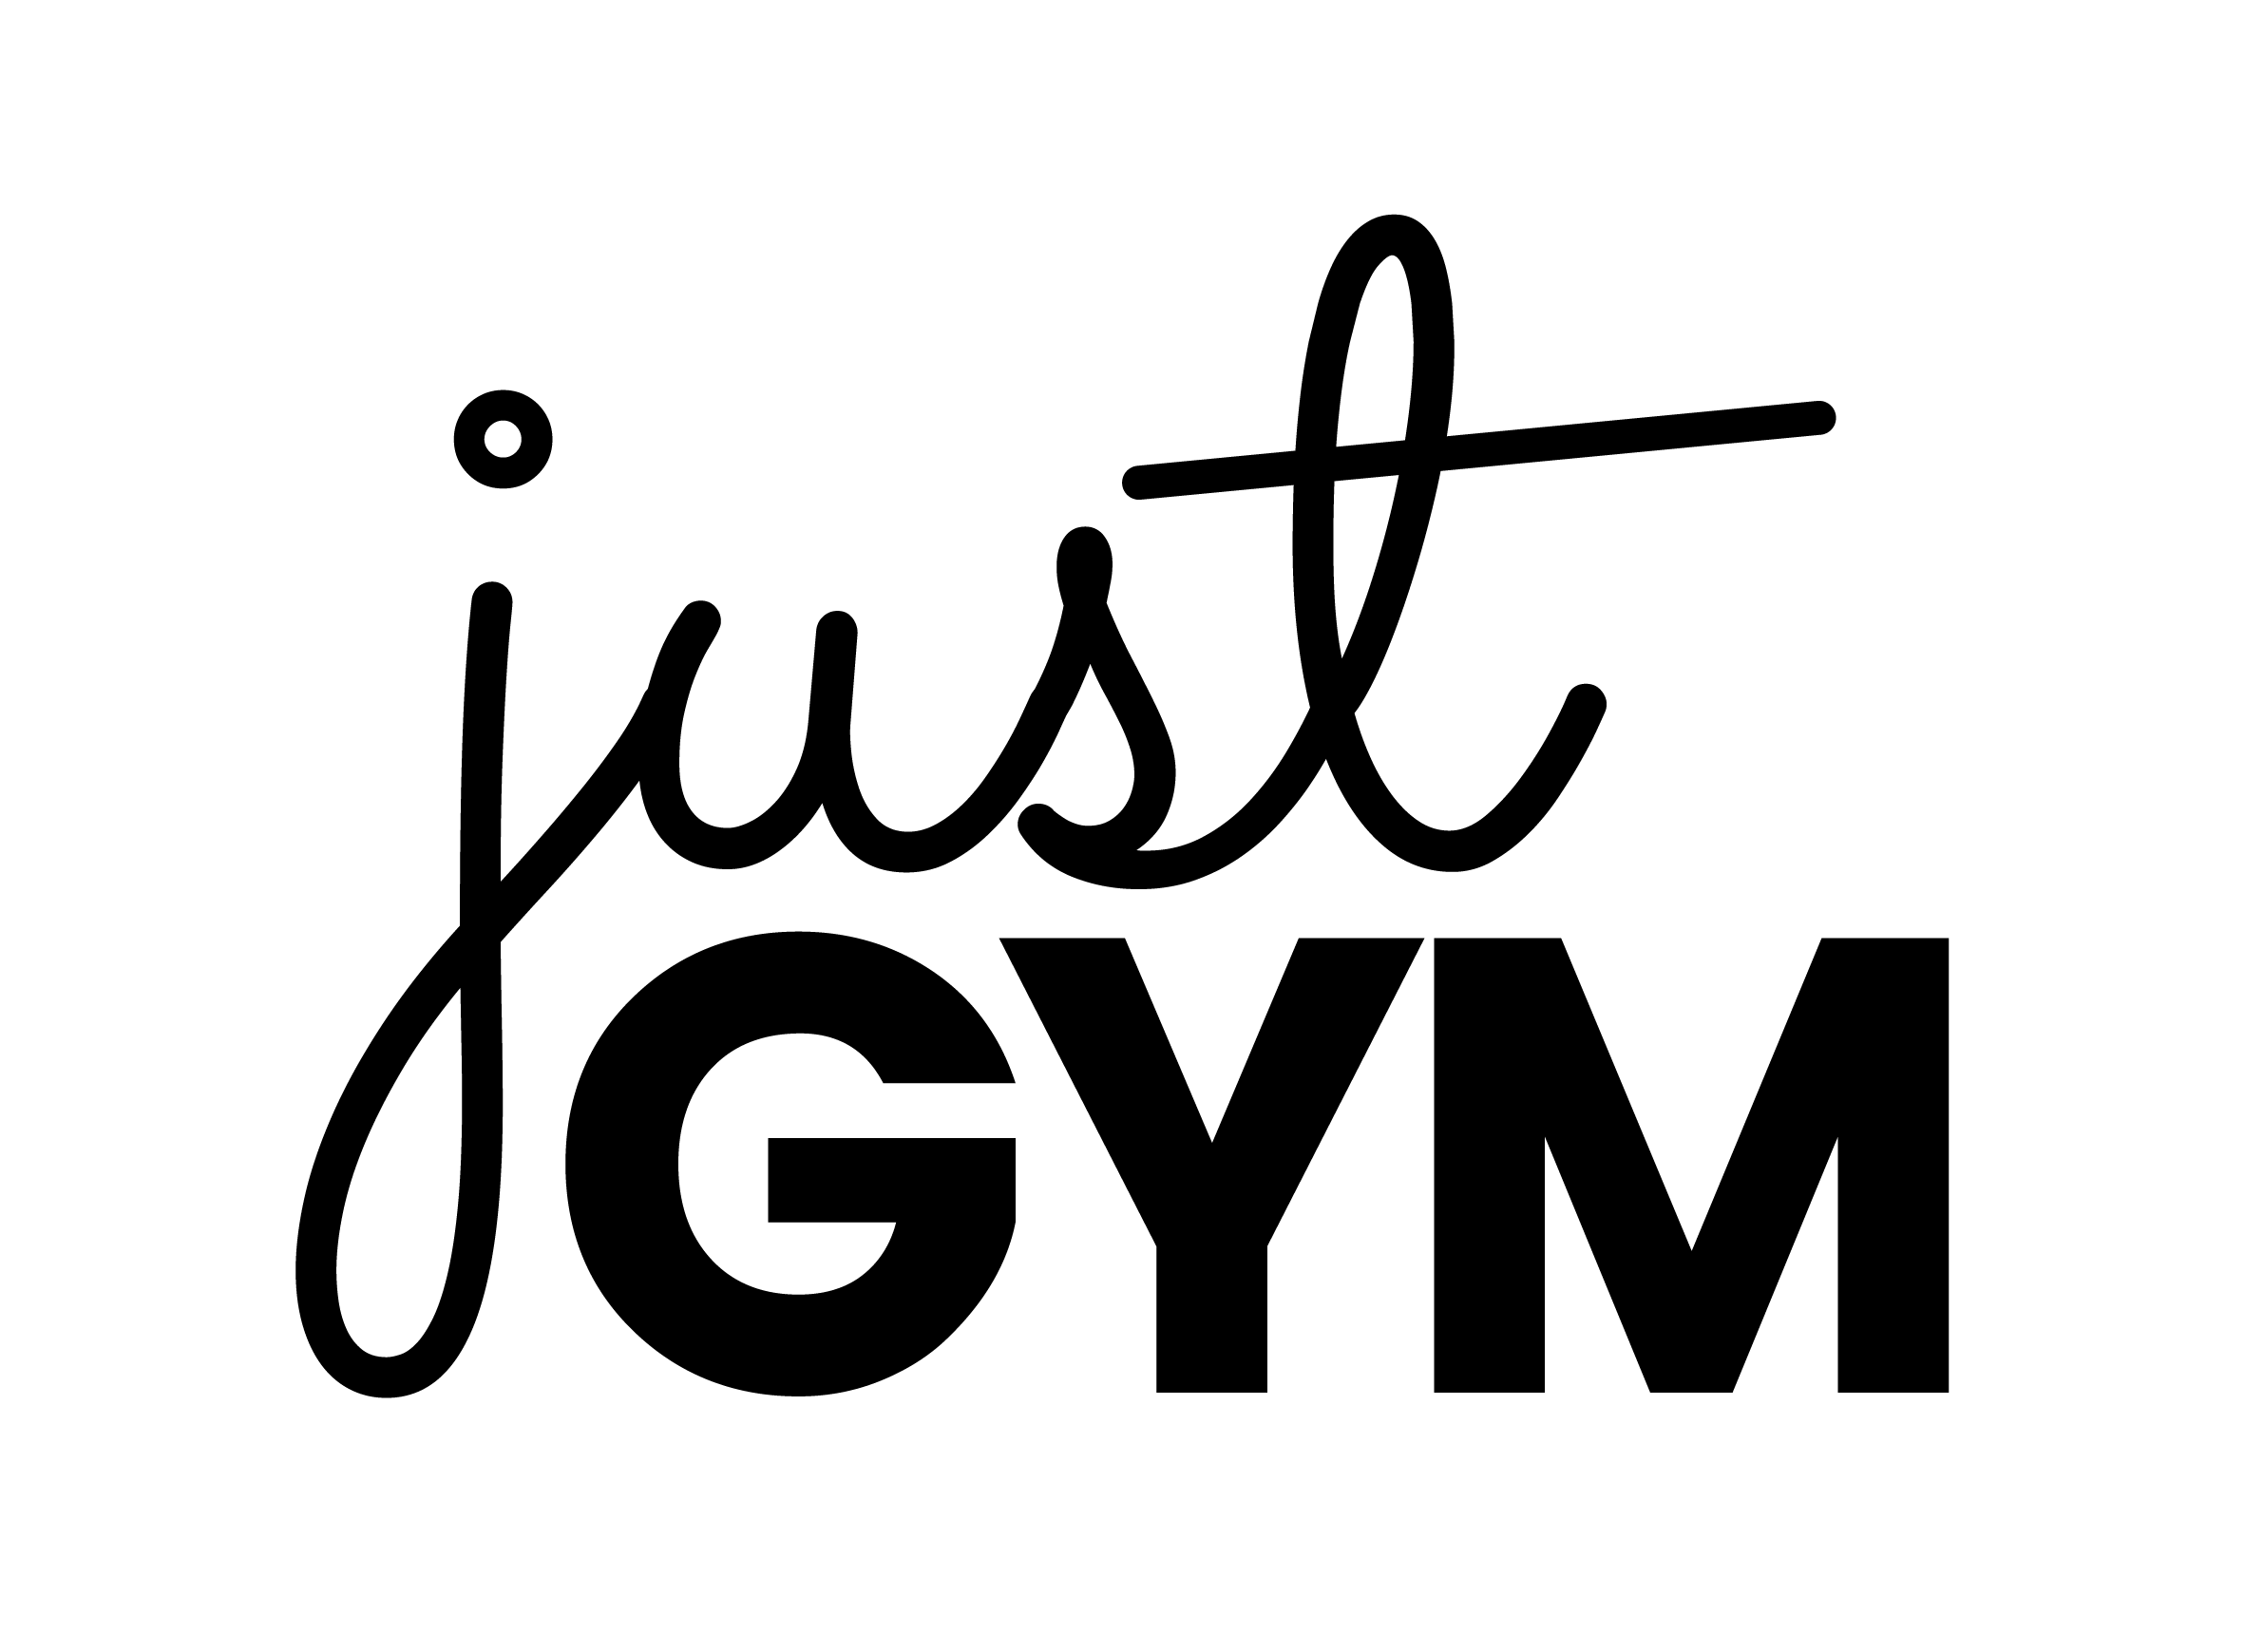 JUSTGYM logo black